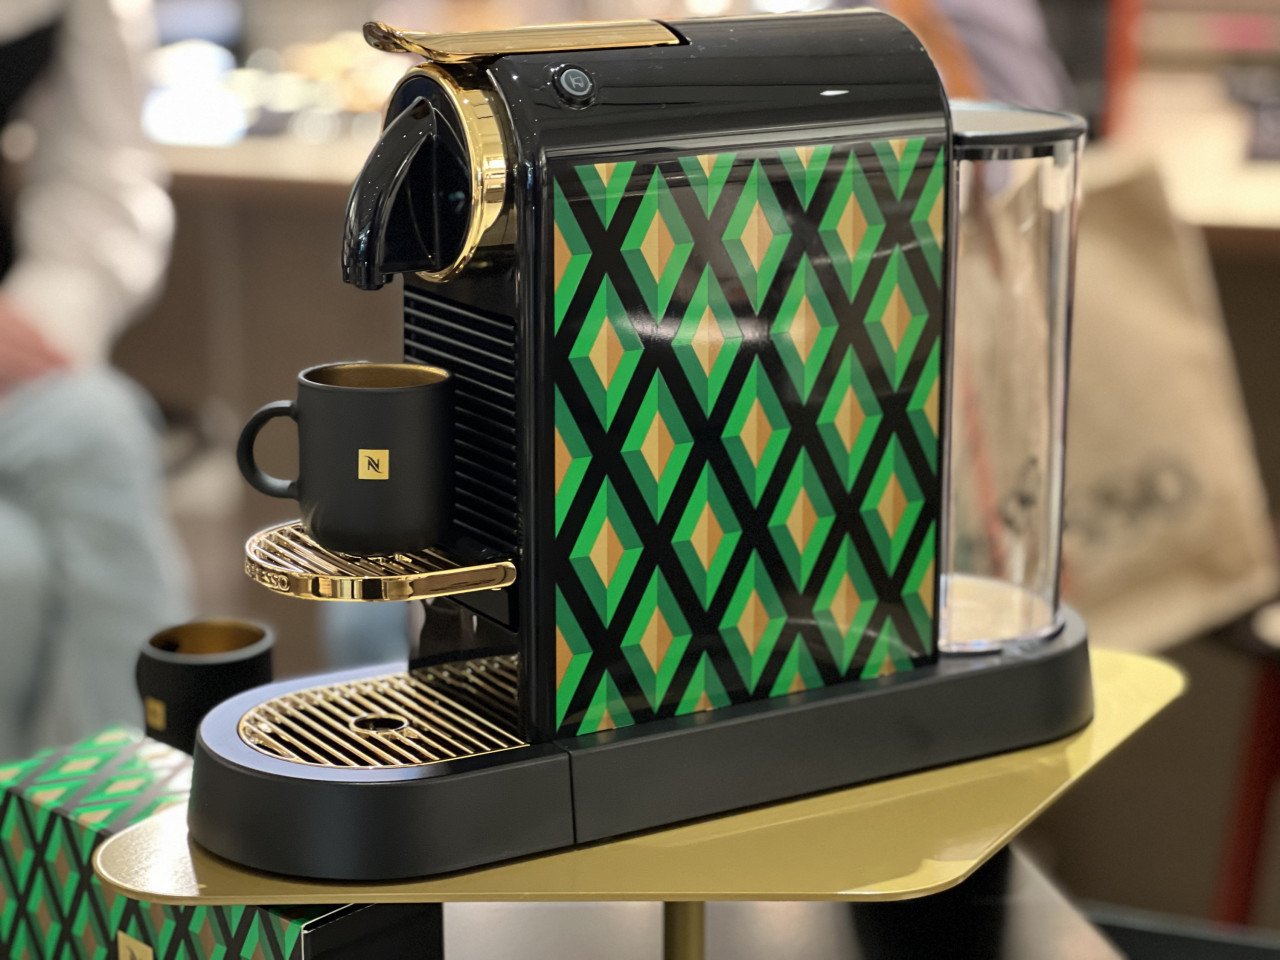 Mesin kopi Nespresso CitiZ edisi terhad ini memberikan penghayatan budaya Itali yang direka dengan elegan - Gambar oleh Izwan Ramlan